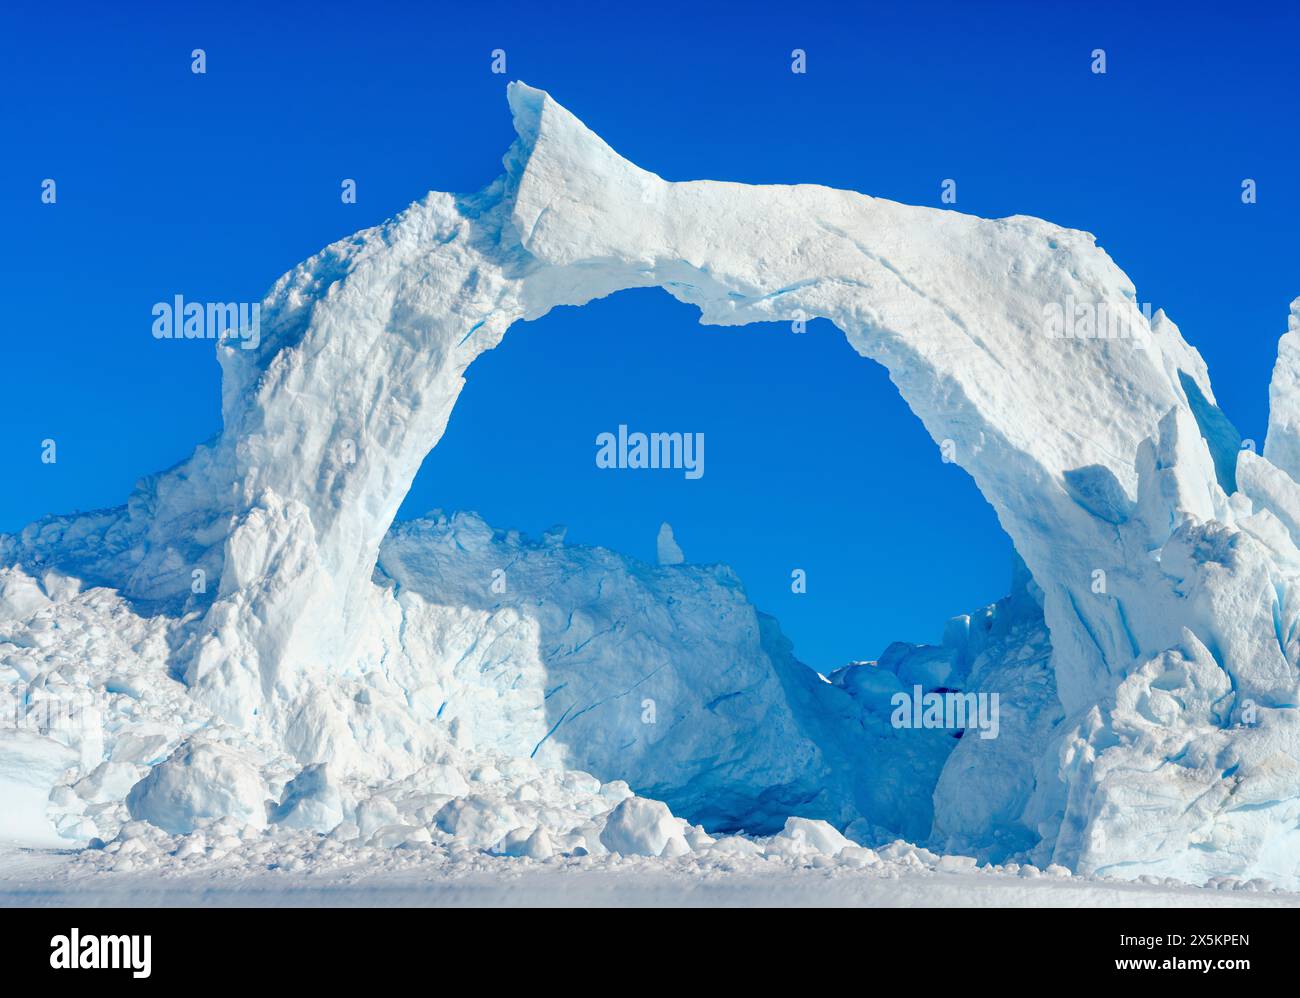 Iceberg nel fiordo. Paesaggio nel fiordo di Johan Petersen, un ramo del Sermilik Icefjord, regione di Ammassalik, Groenlandia, territorio danese. Foto Stock